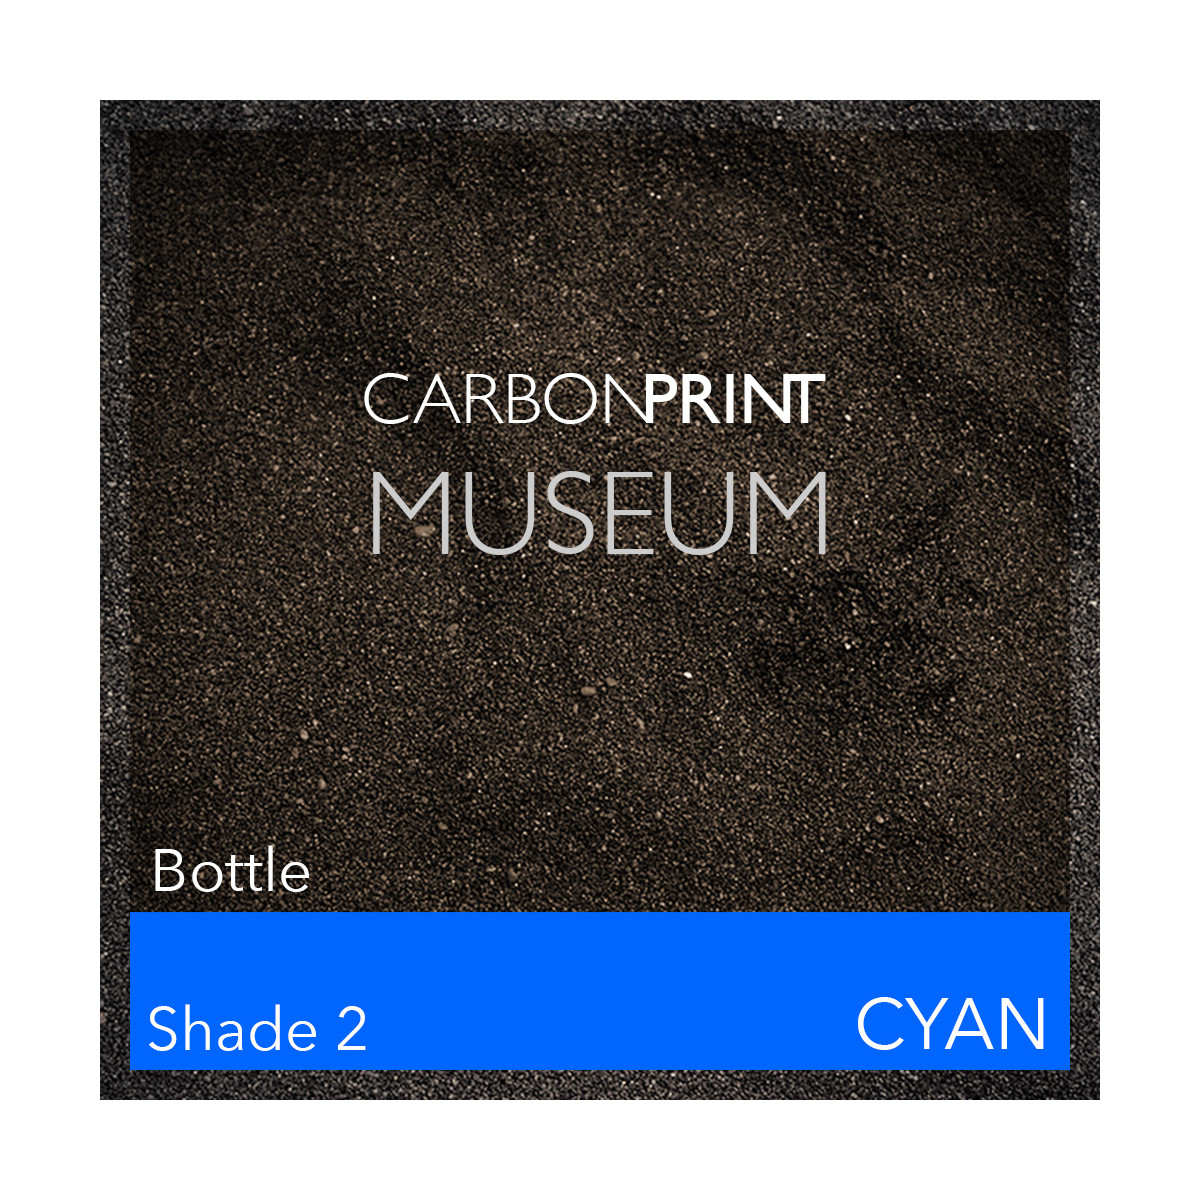 Carbonprint Museum Shade2 Kanal C